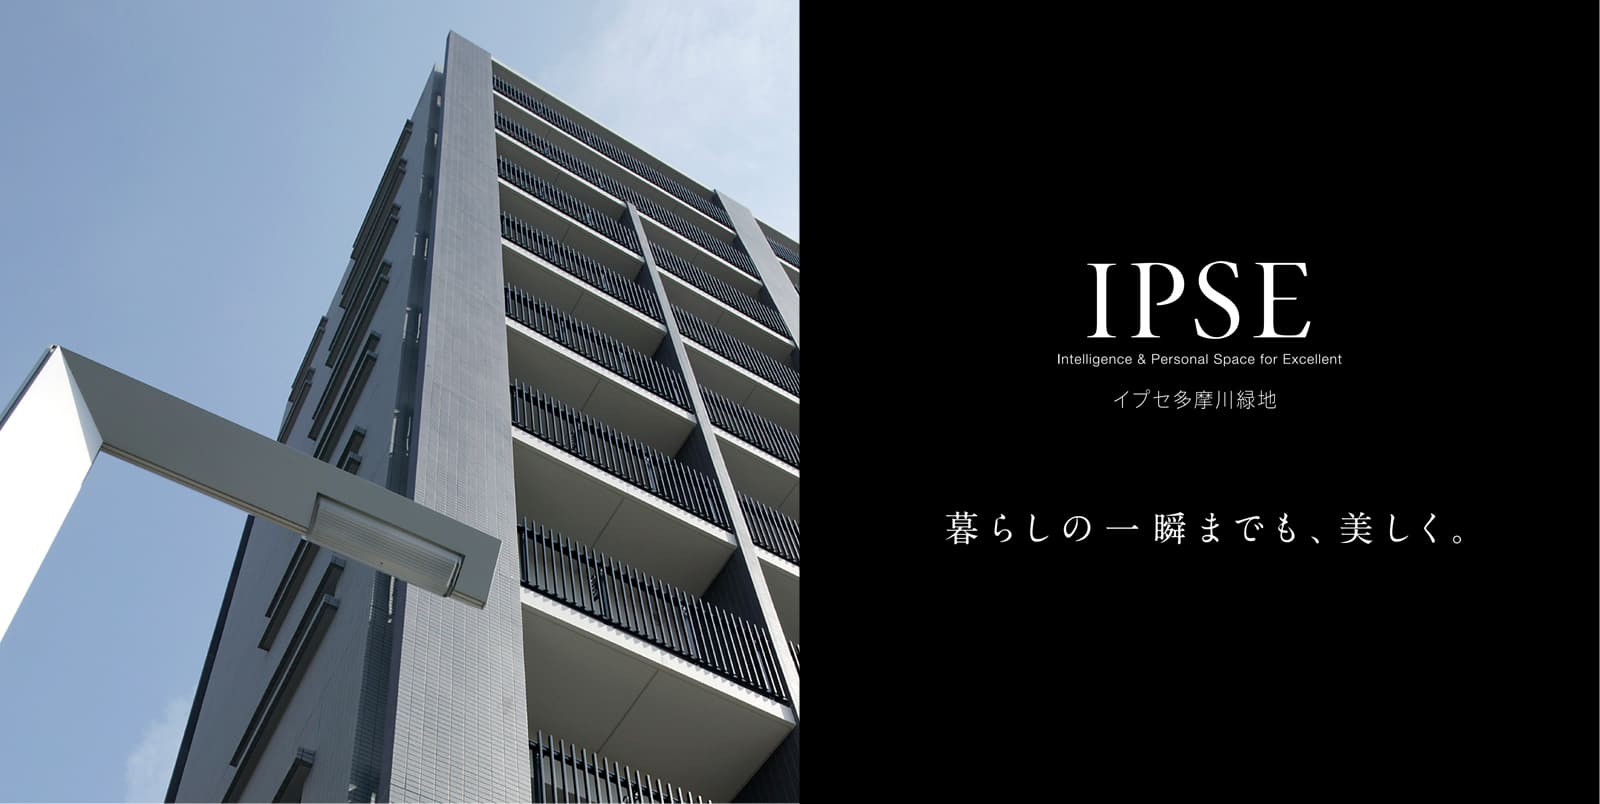 イプセ多摩川緑地 IPSE Intelligence & Personal Space for Excellent 暮らしの一瞬までも、美しく